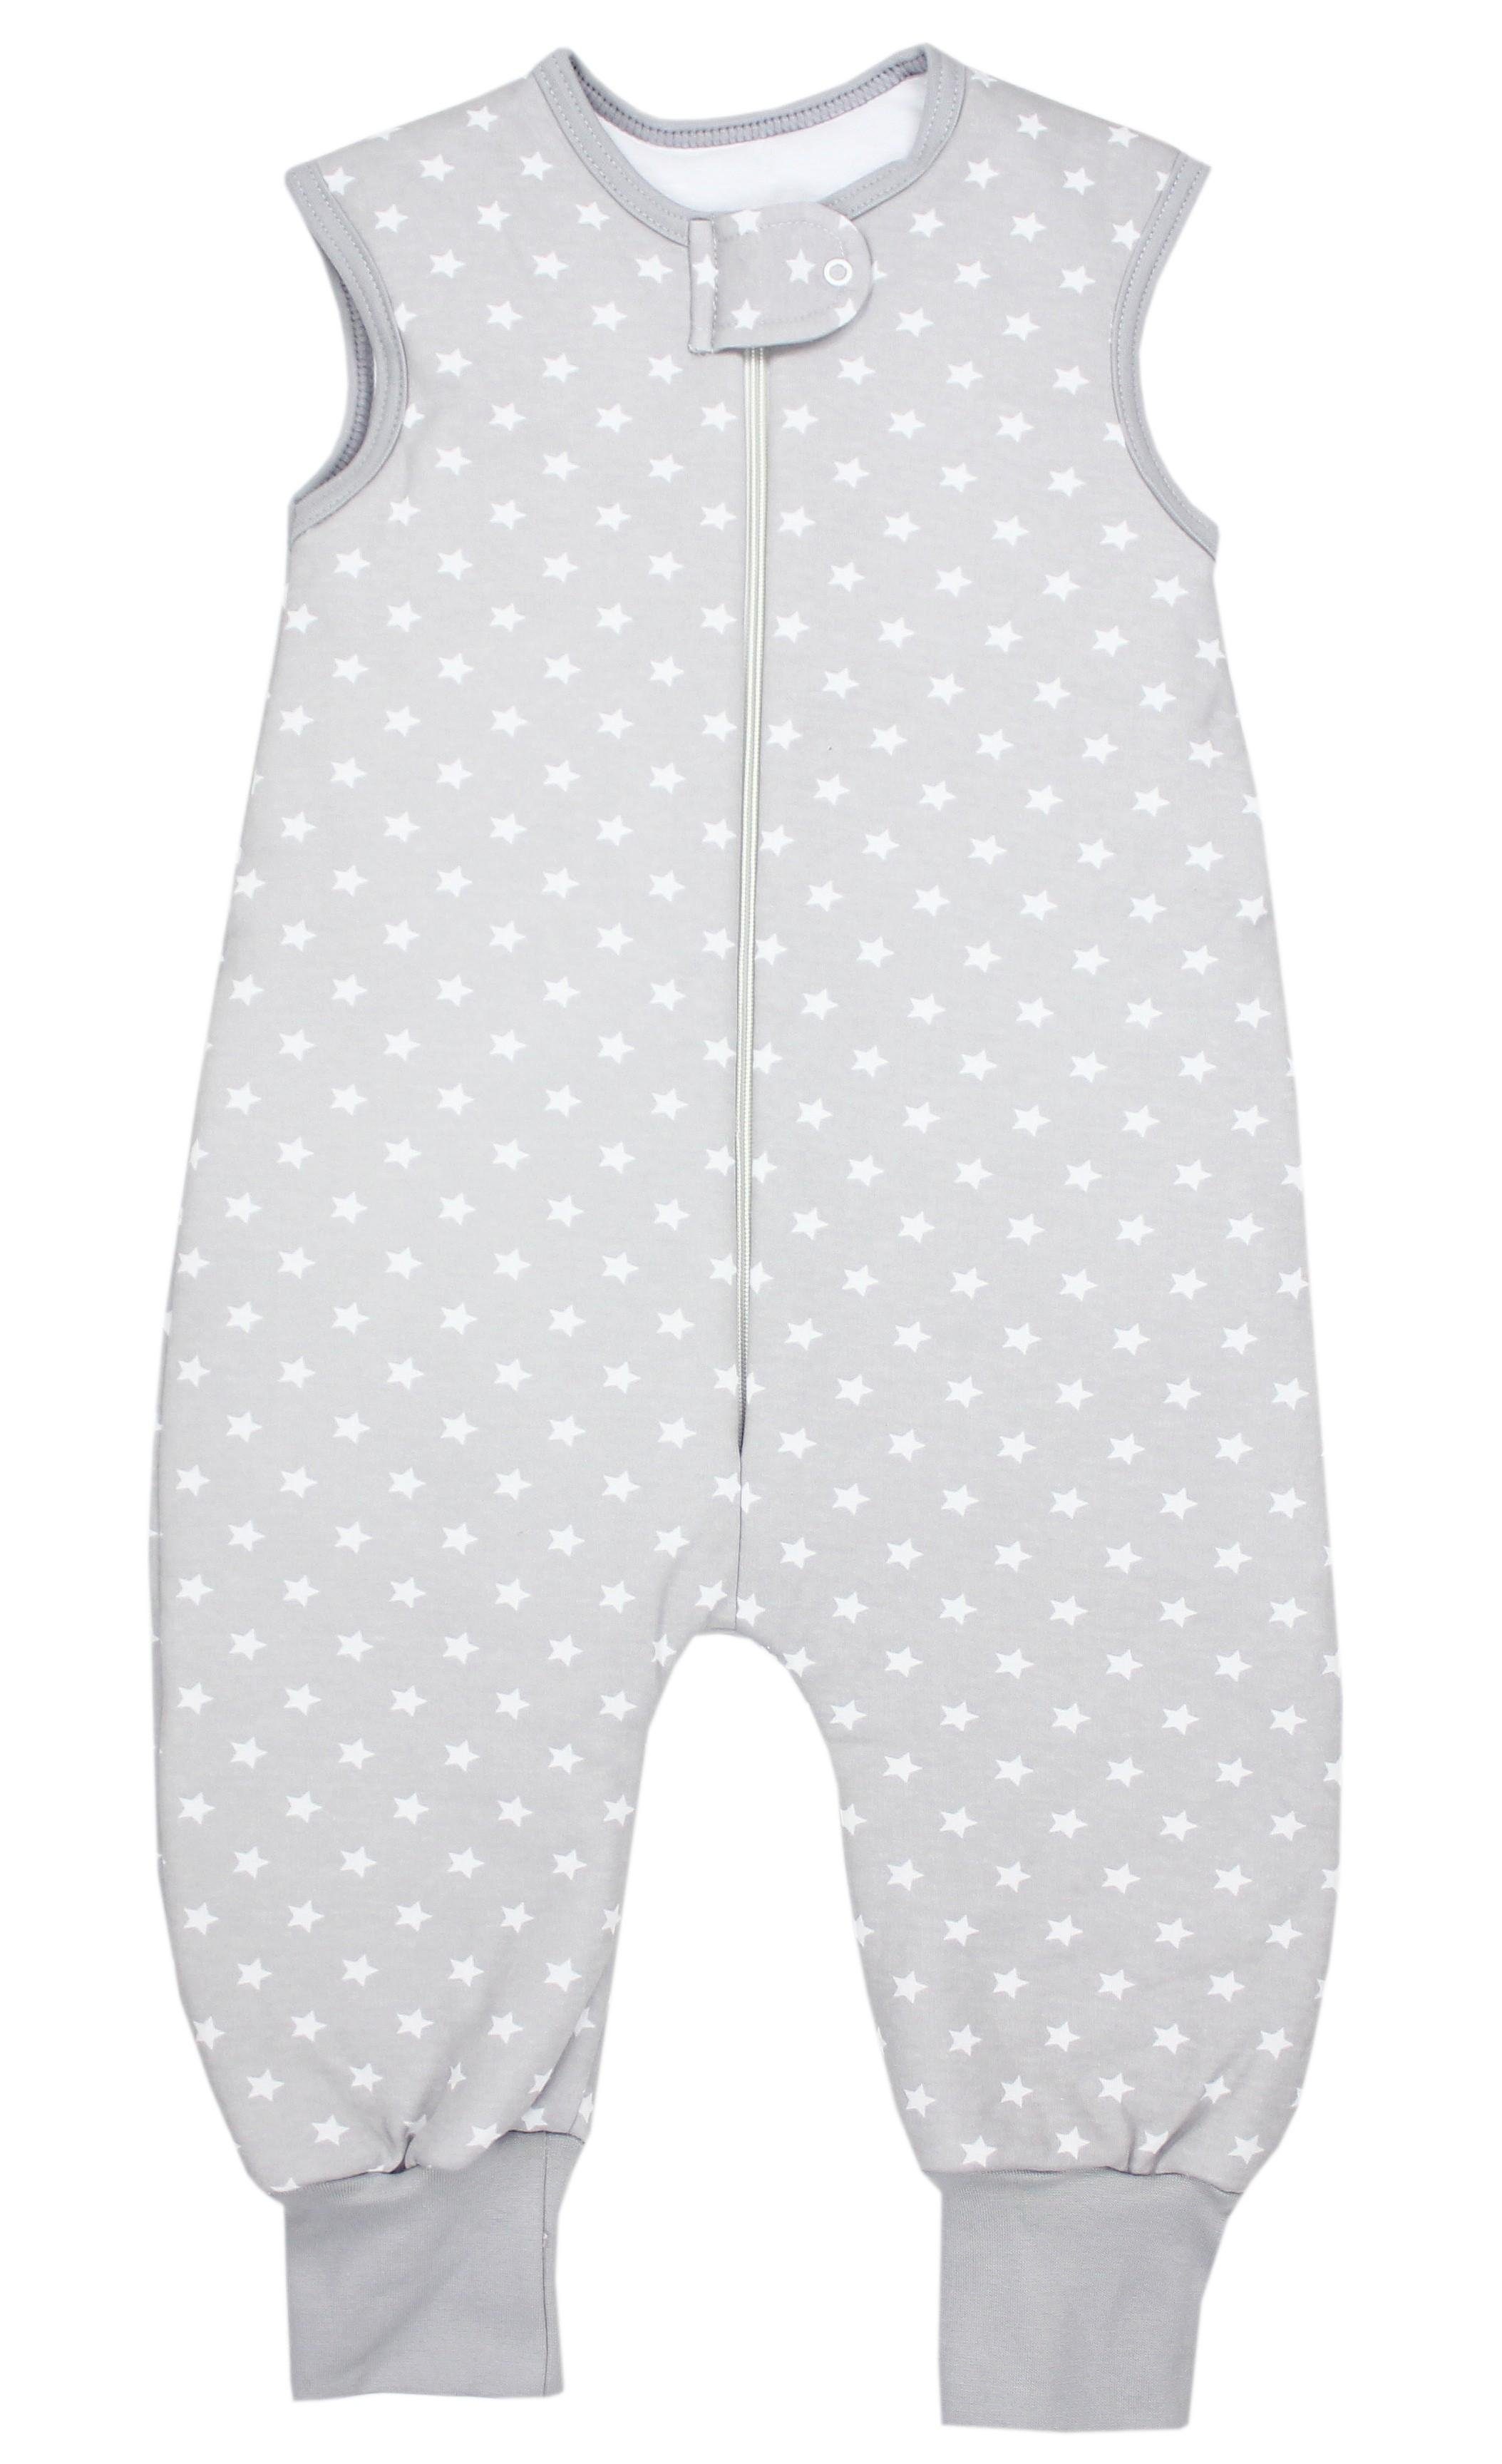 TupTam Babyschlafsack Winter Schlafsack mit Beinen OEKO-TEX zertifiziert 2,5 TOG Unisex Sternchen Grau/Weiß